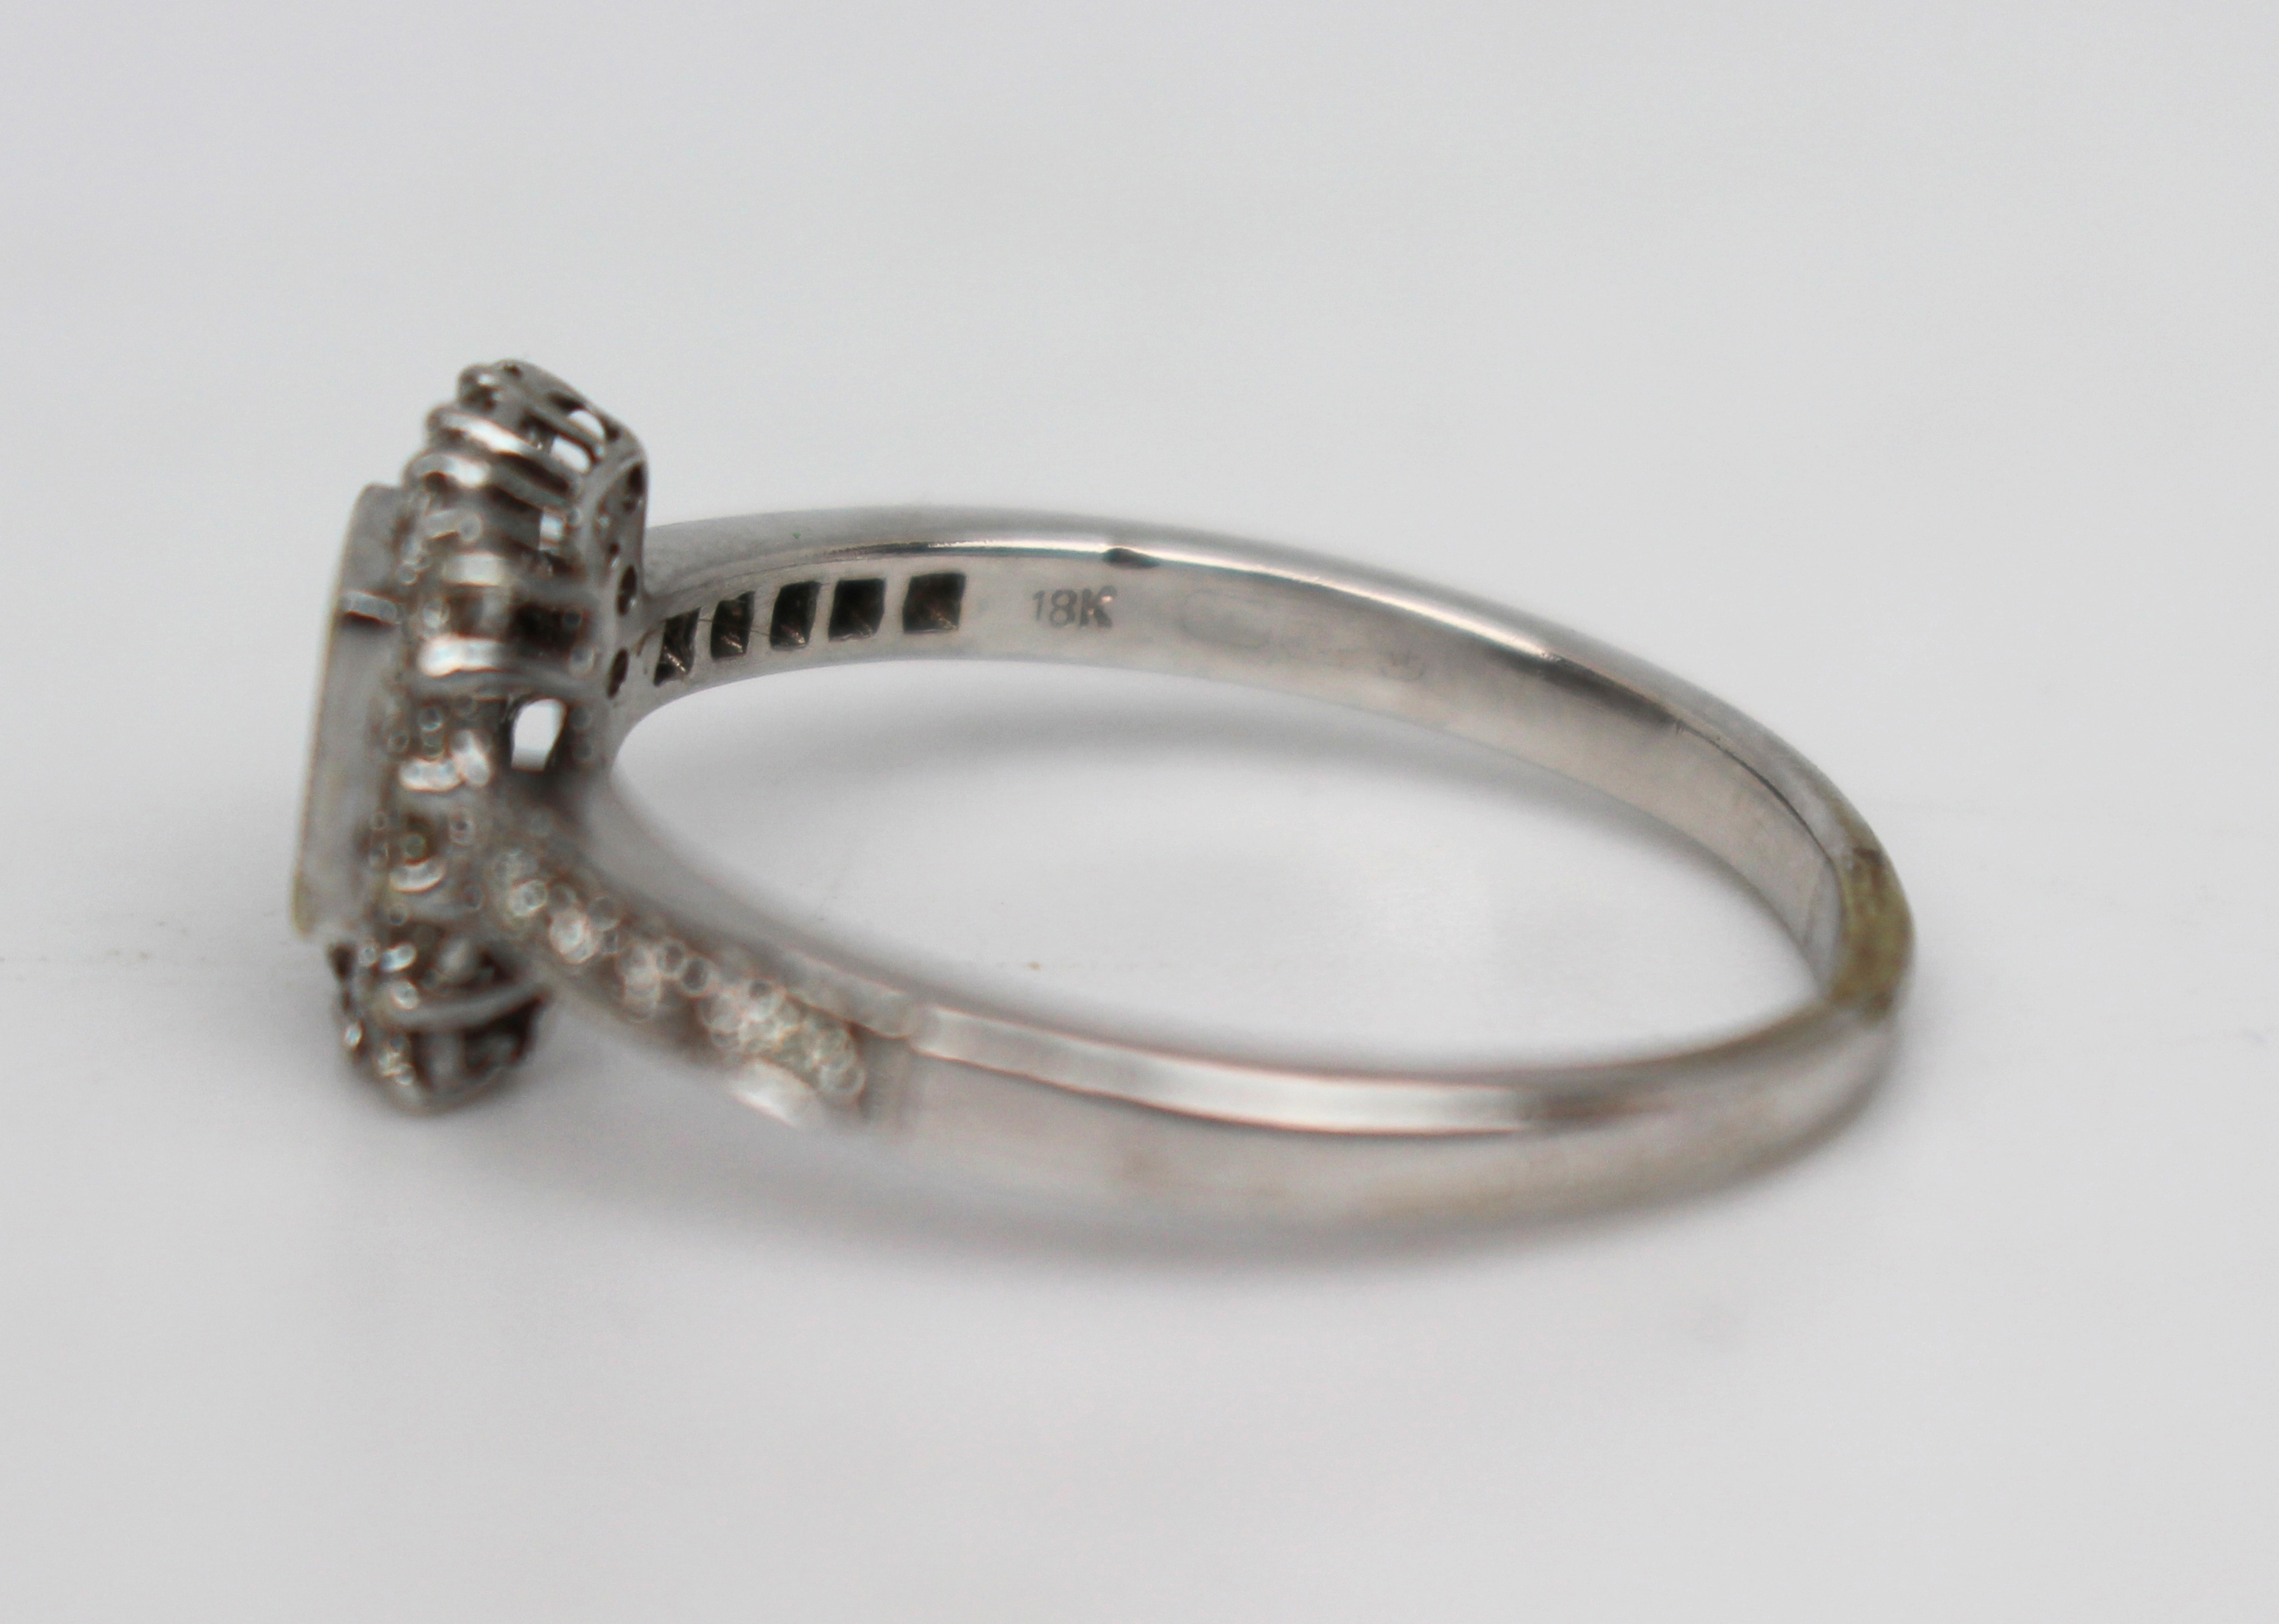 Diamond 18ct White Gold Ring 0.70 carat - Image 4 of 7